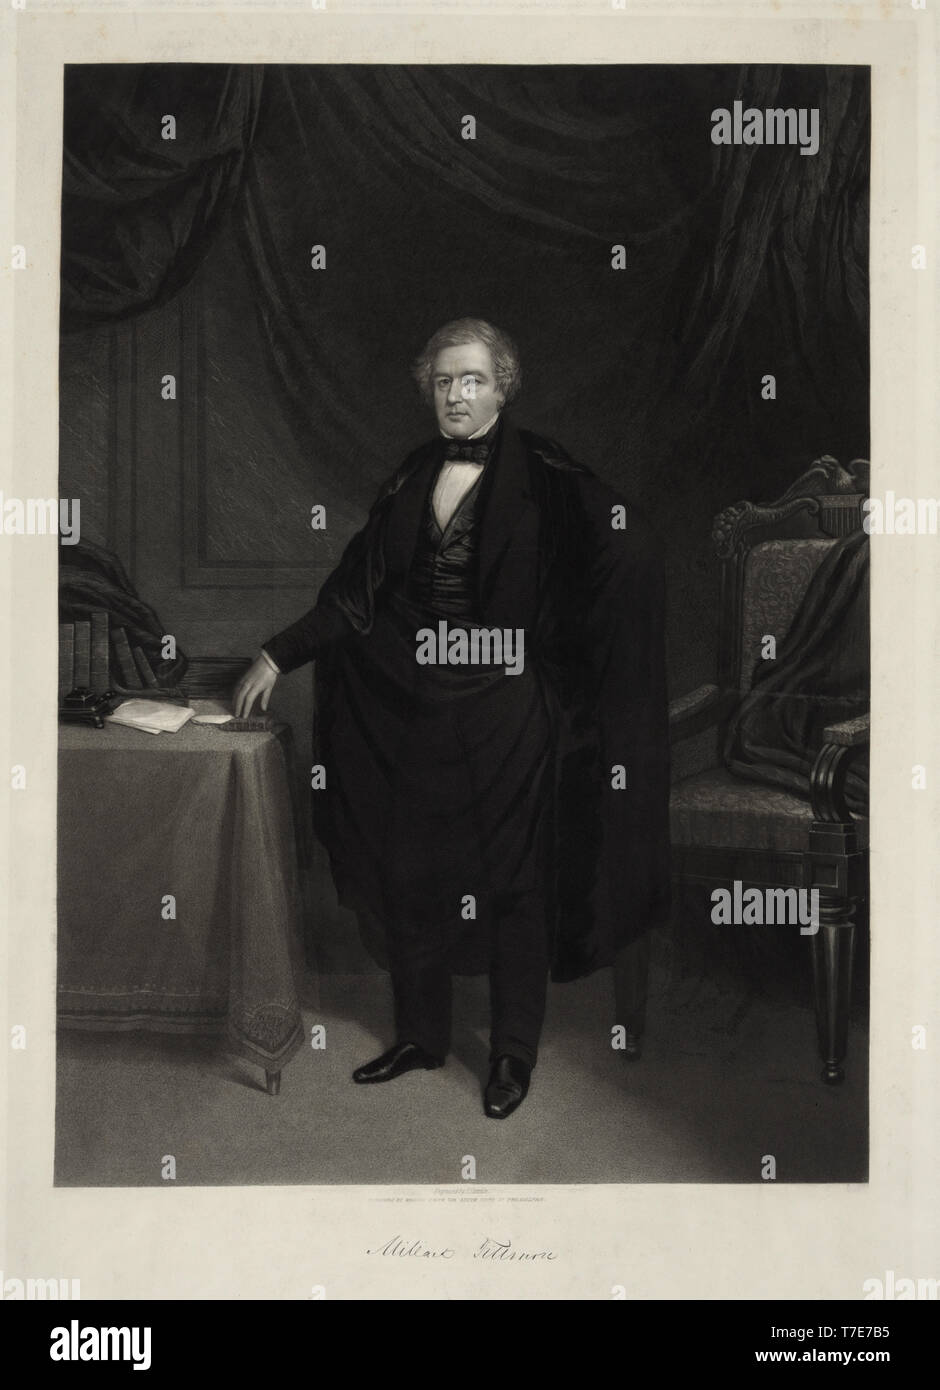 Millard Fillmore, in voller Länge Porträt, Kupferstich von J.Sartain, von William Smith, Philadelphia, Anfang 1850 veröffentlicht. Stockfoto